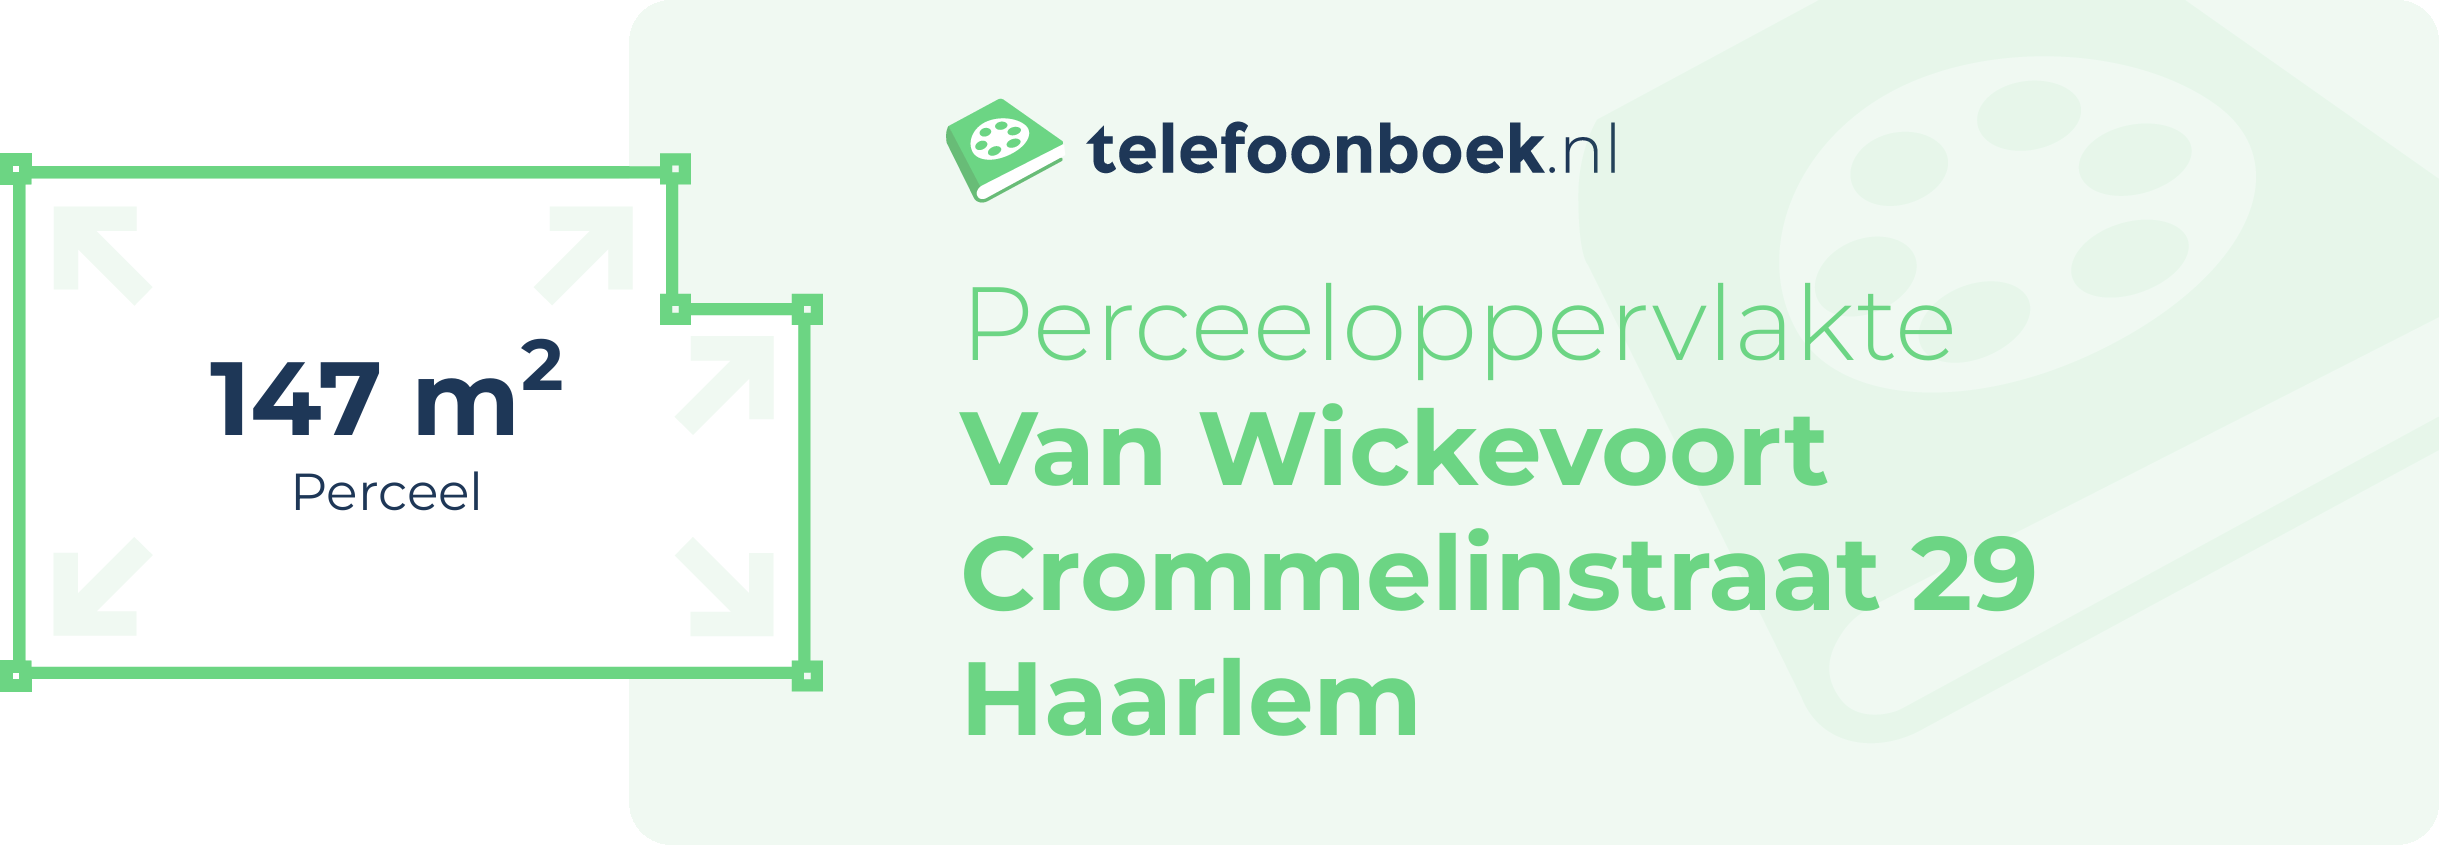 Perceeloppervlakte Van Wickevoort Crommelinstraat 29 Haarlem